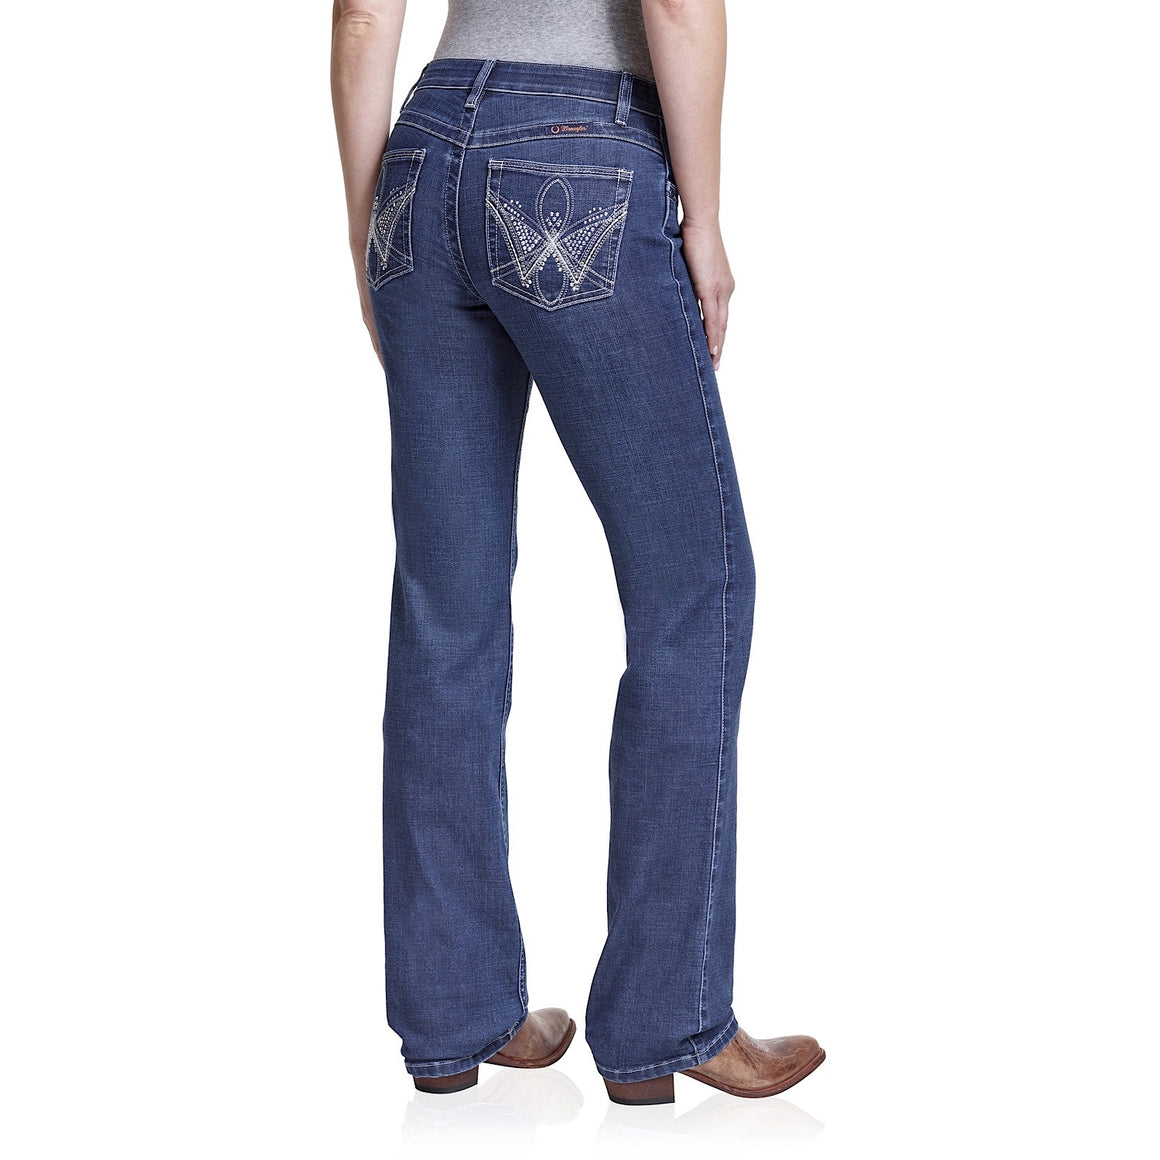 Buy Wrangler Womens Jeans - The Stable Door